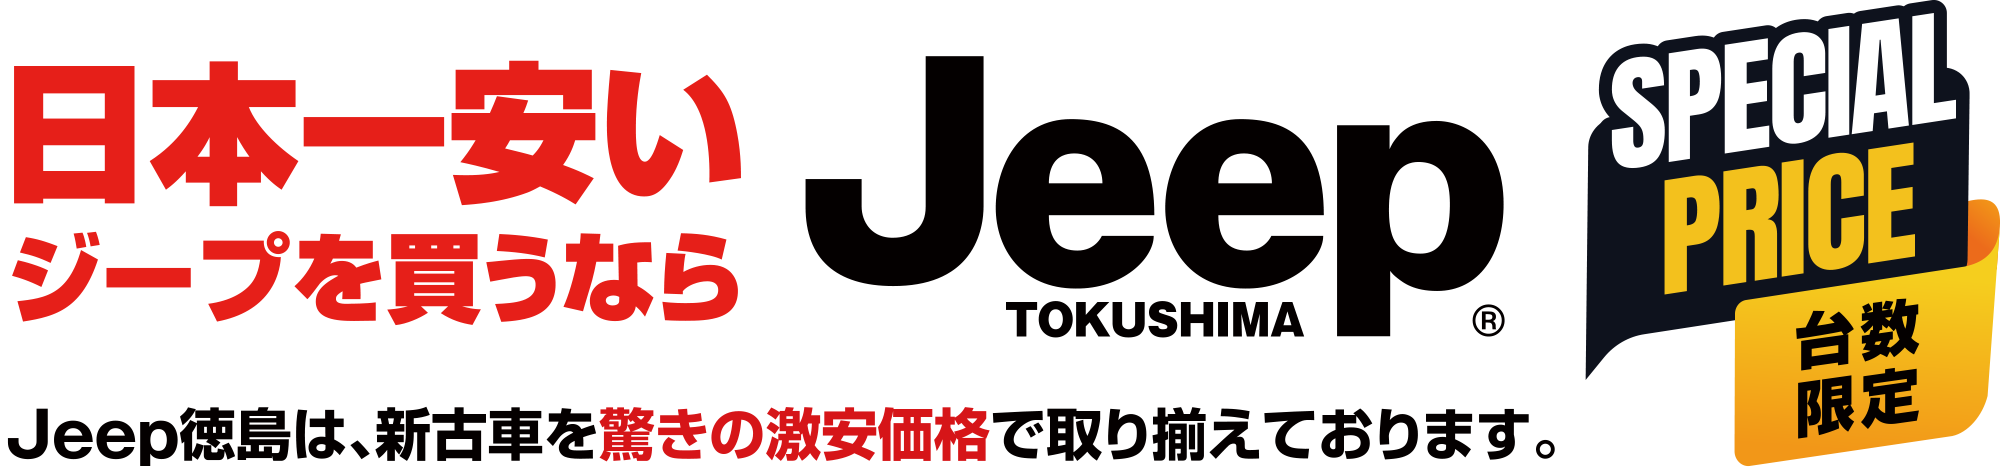 日本一安いジープ買うならJeep TOKUSHIMA Jeep徳島は、新古車を驚きの激安価格で取り揃えております。